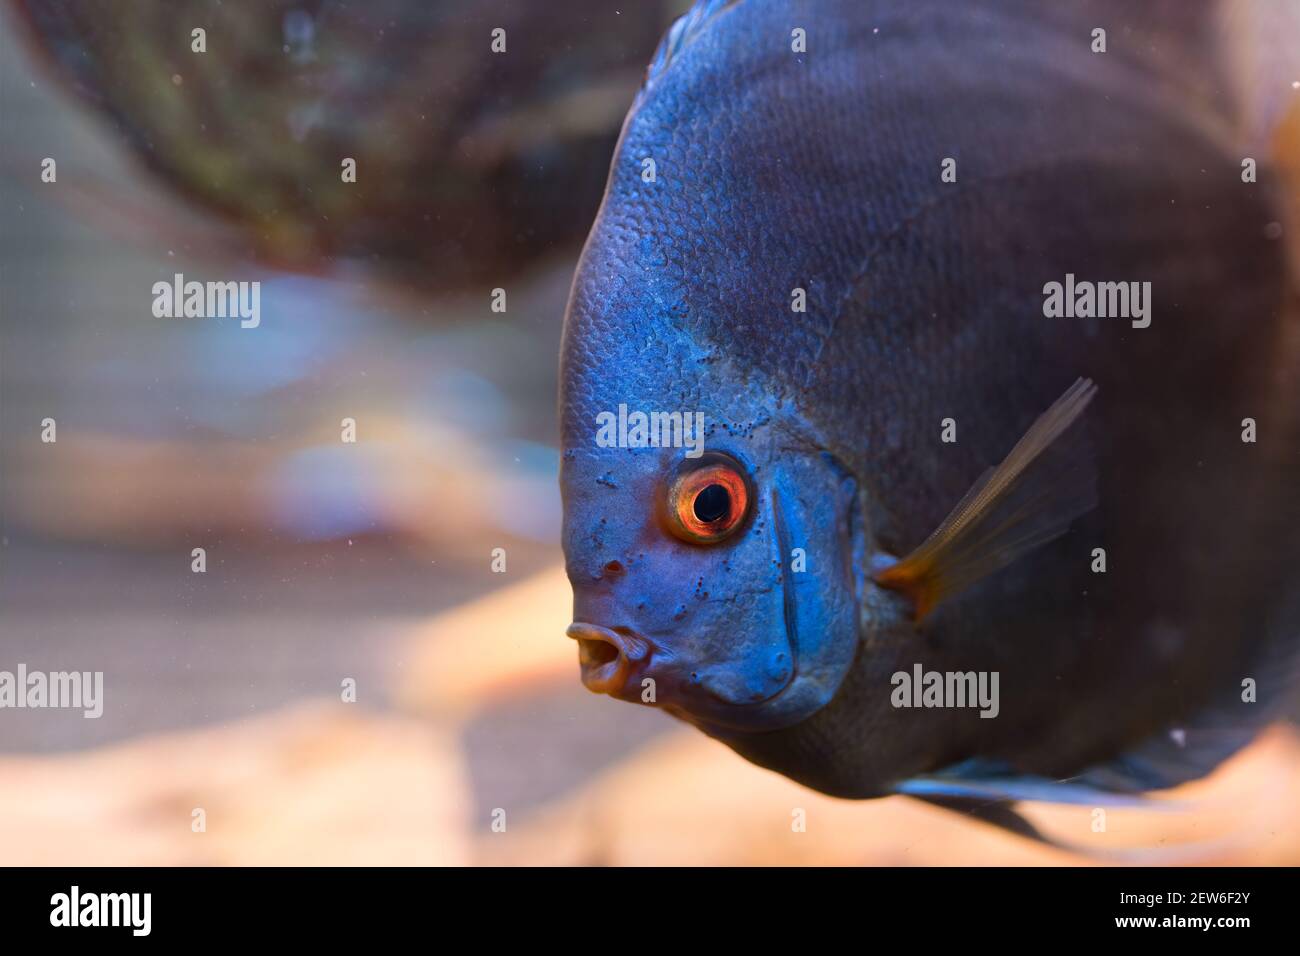 Blue discus fish in the aquarium, detailed closeup Stock Photo